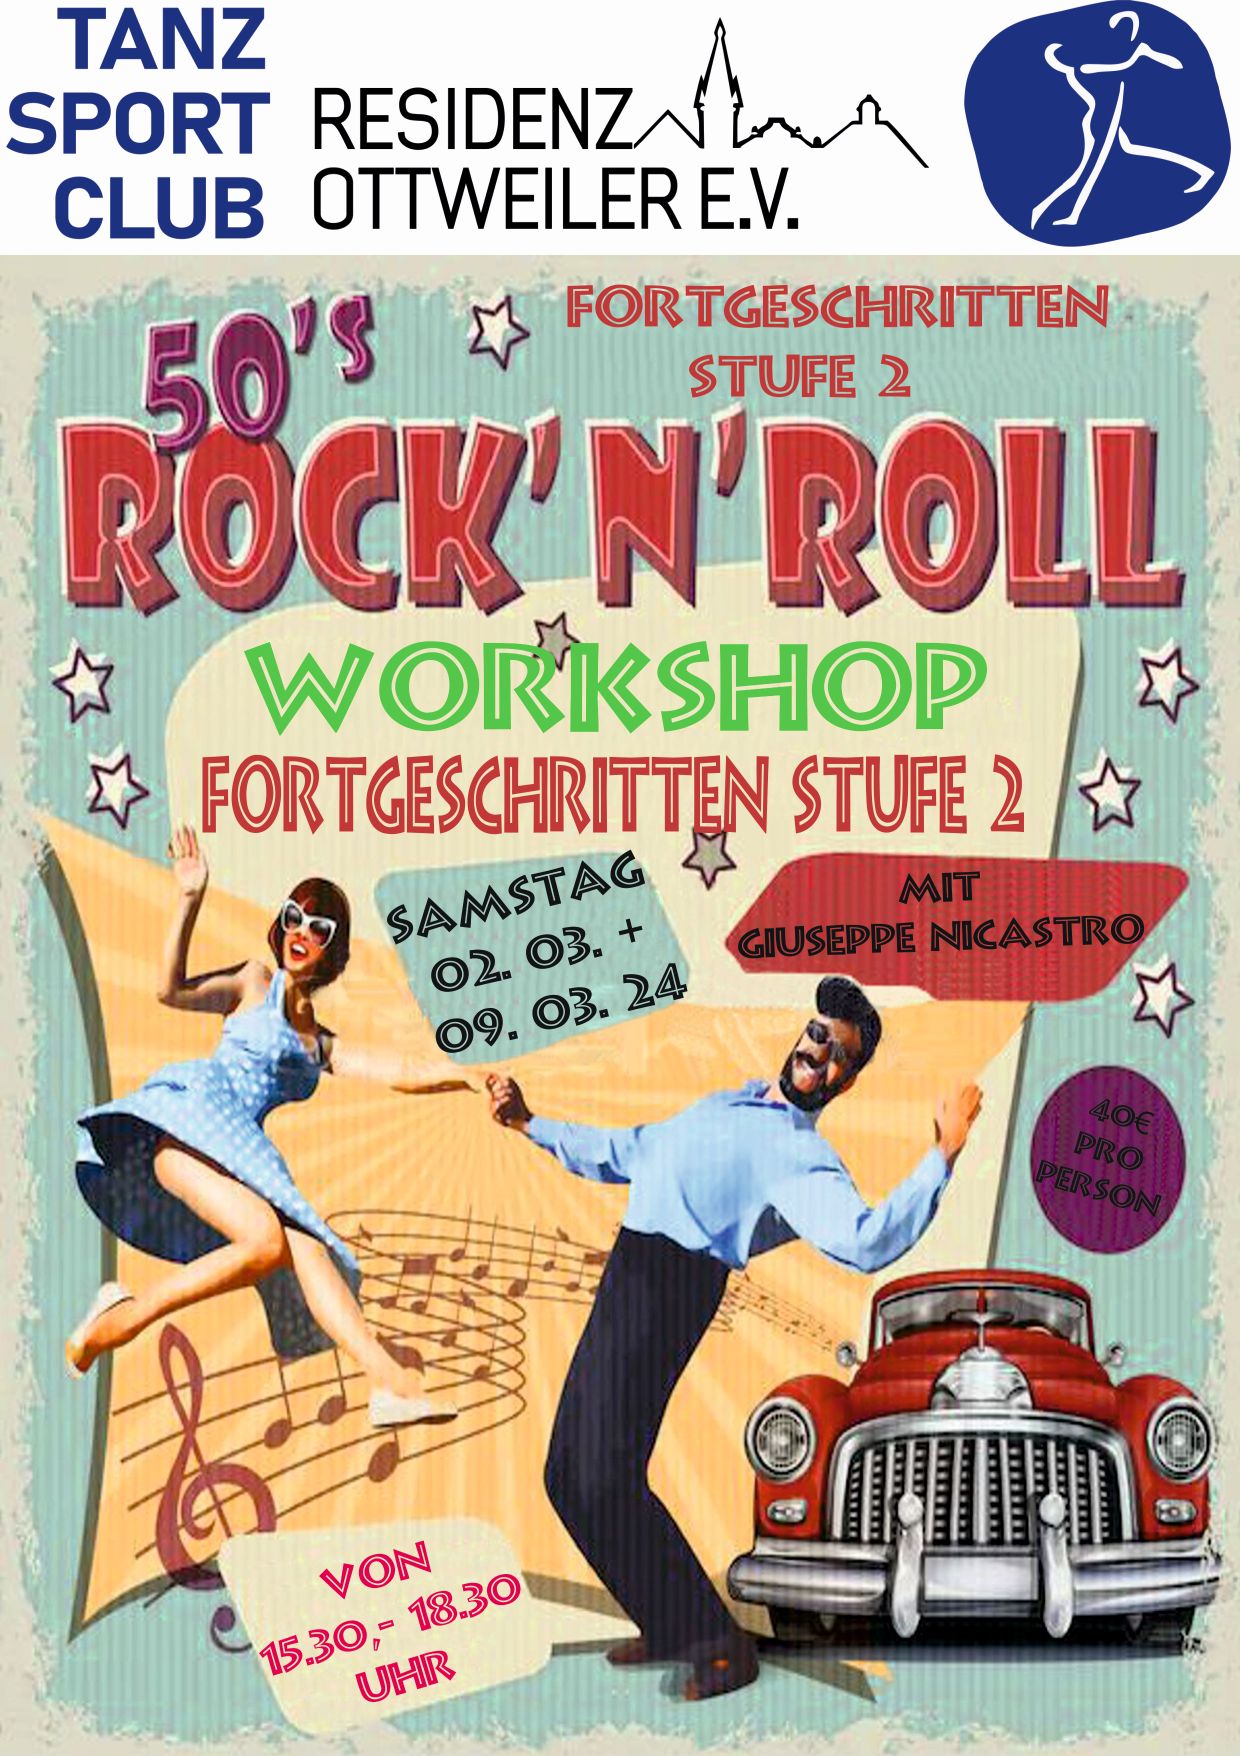 02 2024 Workshop Rock n Roll Fortgeschr Stufe 2